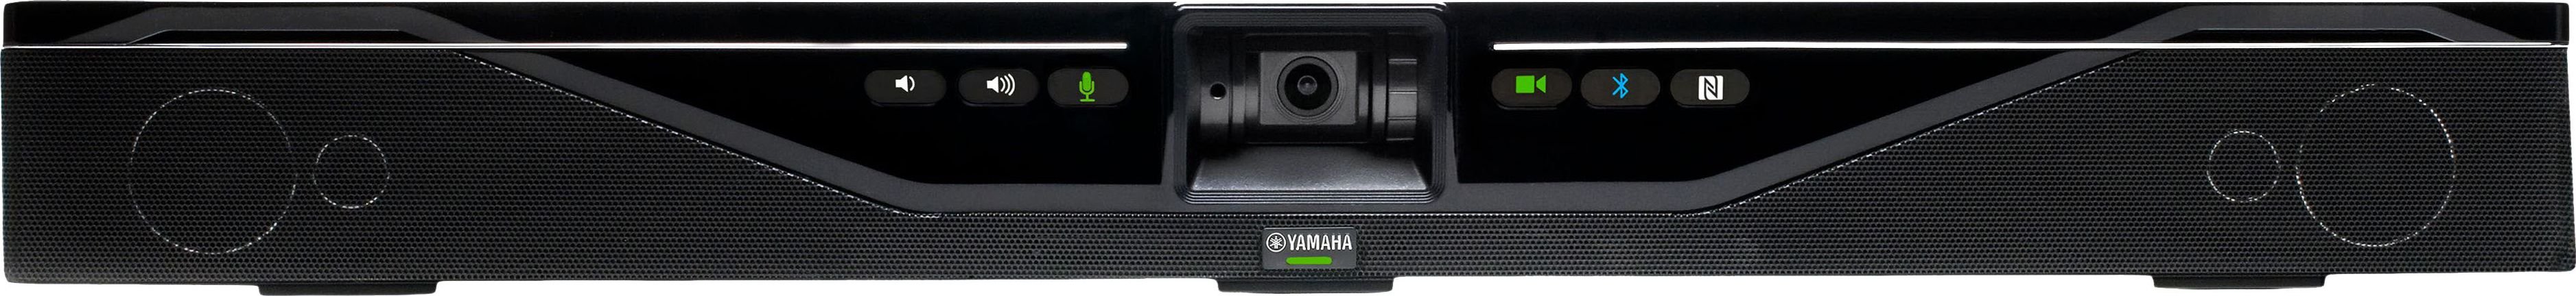 Kit Yamaha CS-700AV pentru conferințe video